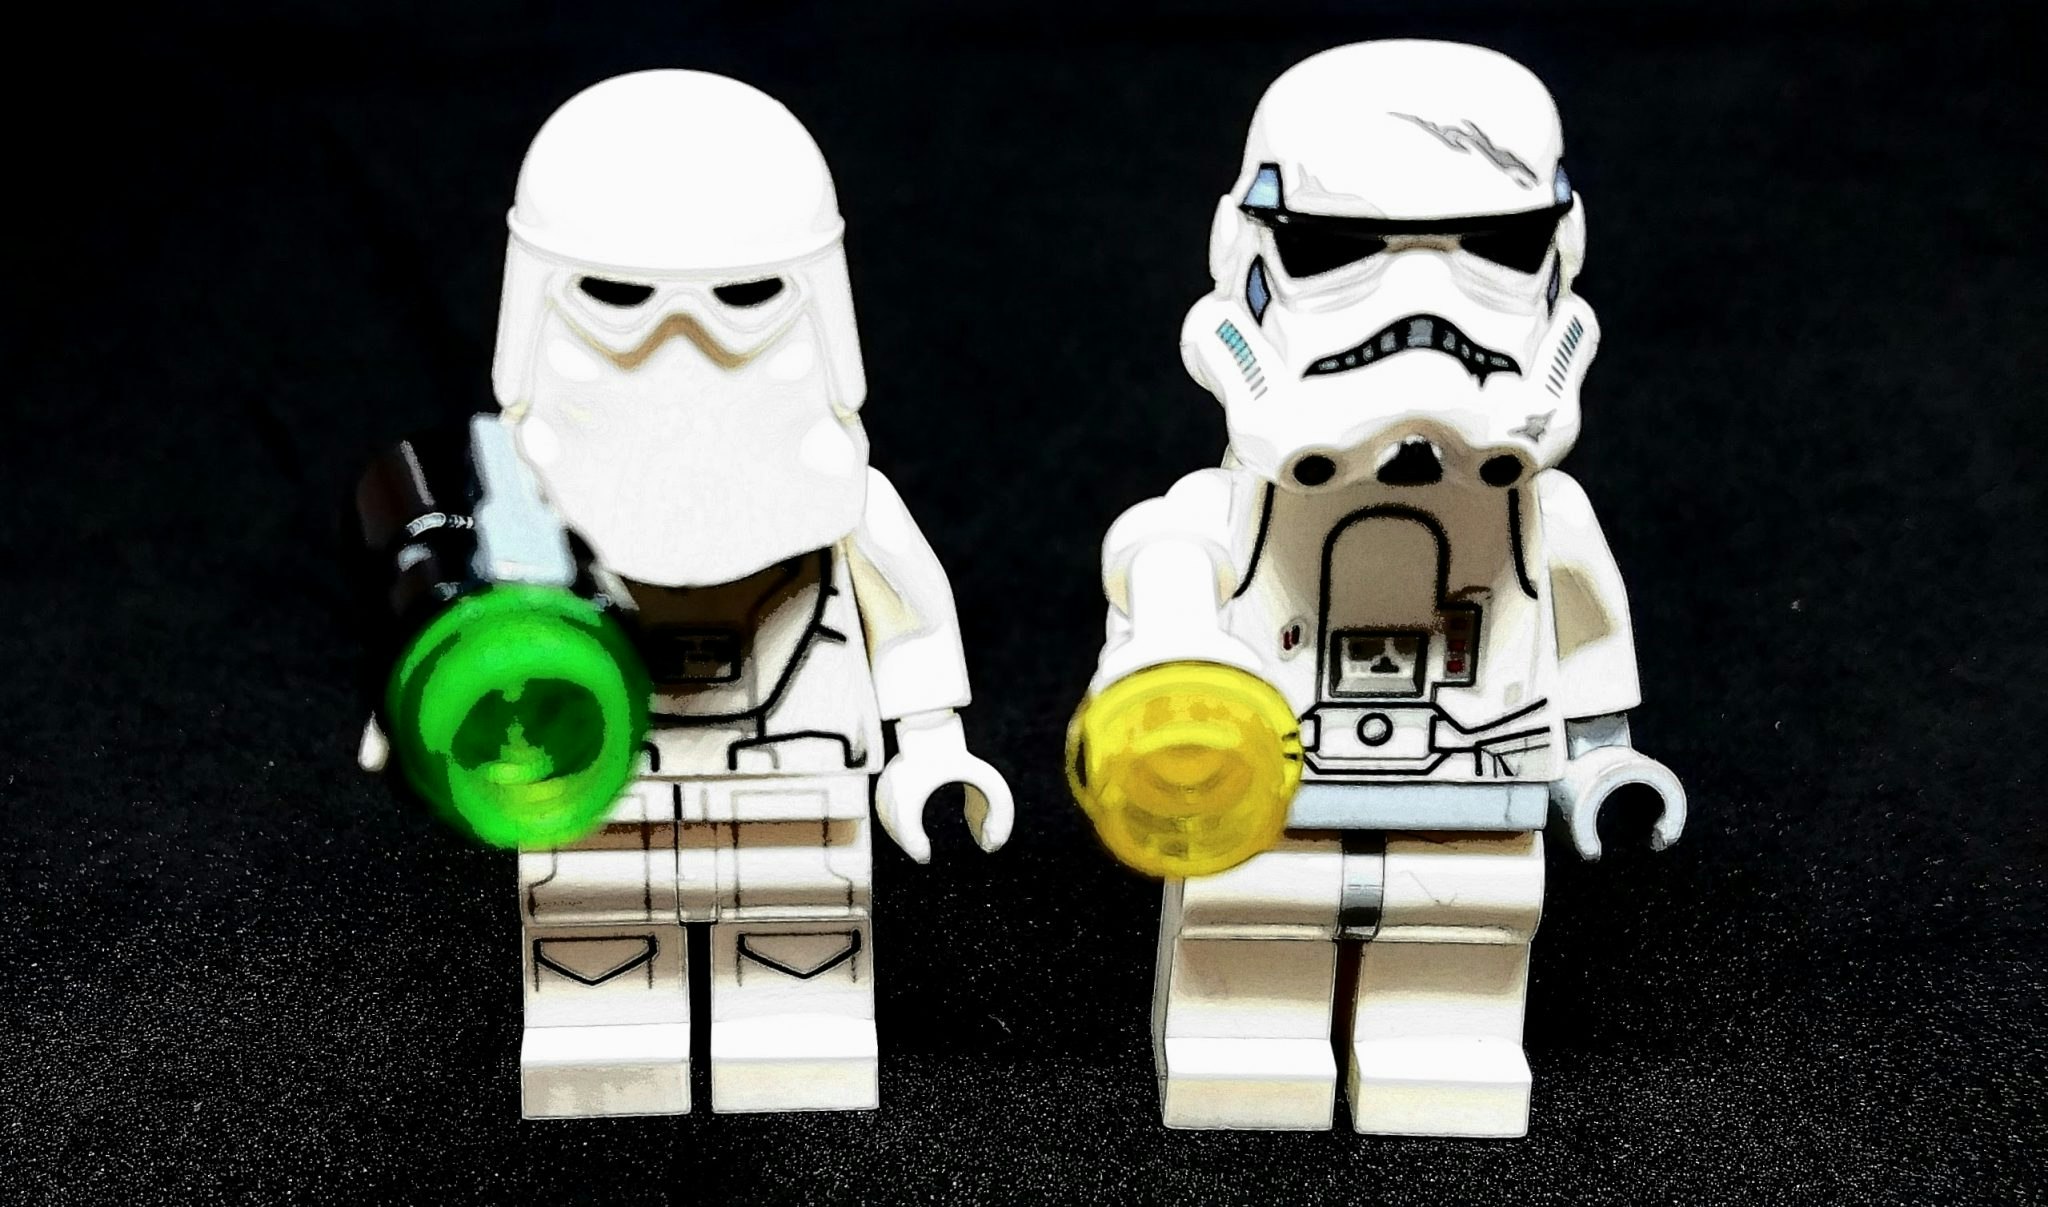 Lego Storm Trooper figures